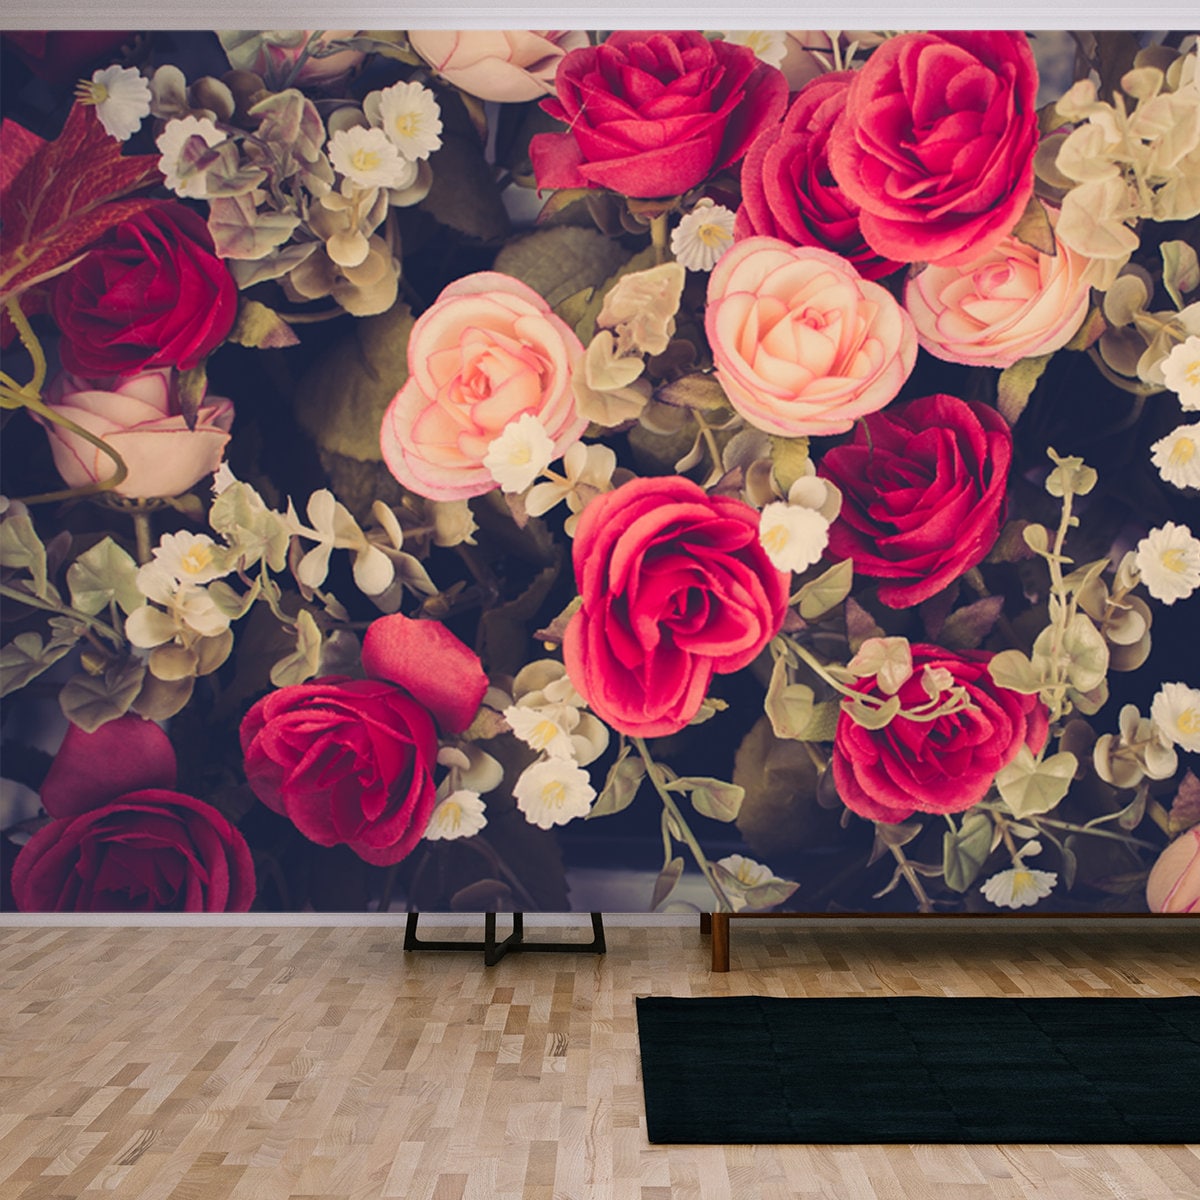 Rose Vintage Flowers on a Black Background Wallpaper Living Room Mural